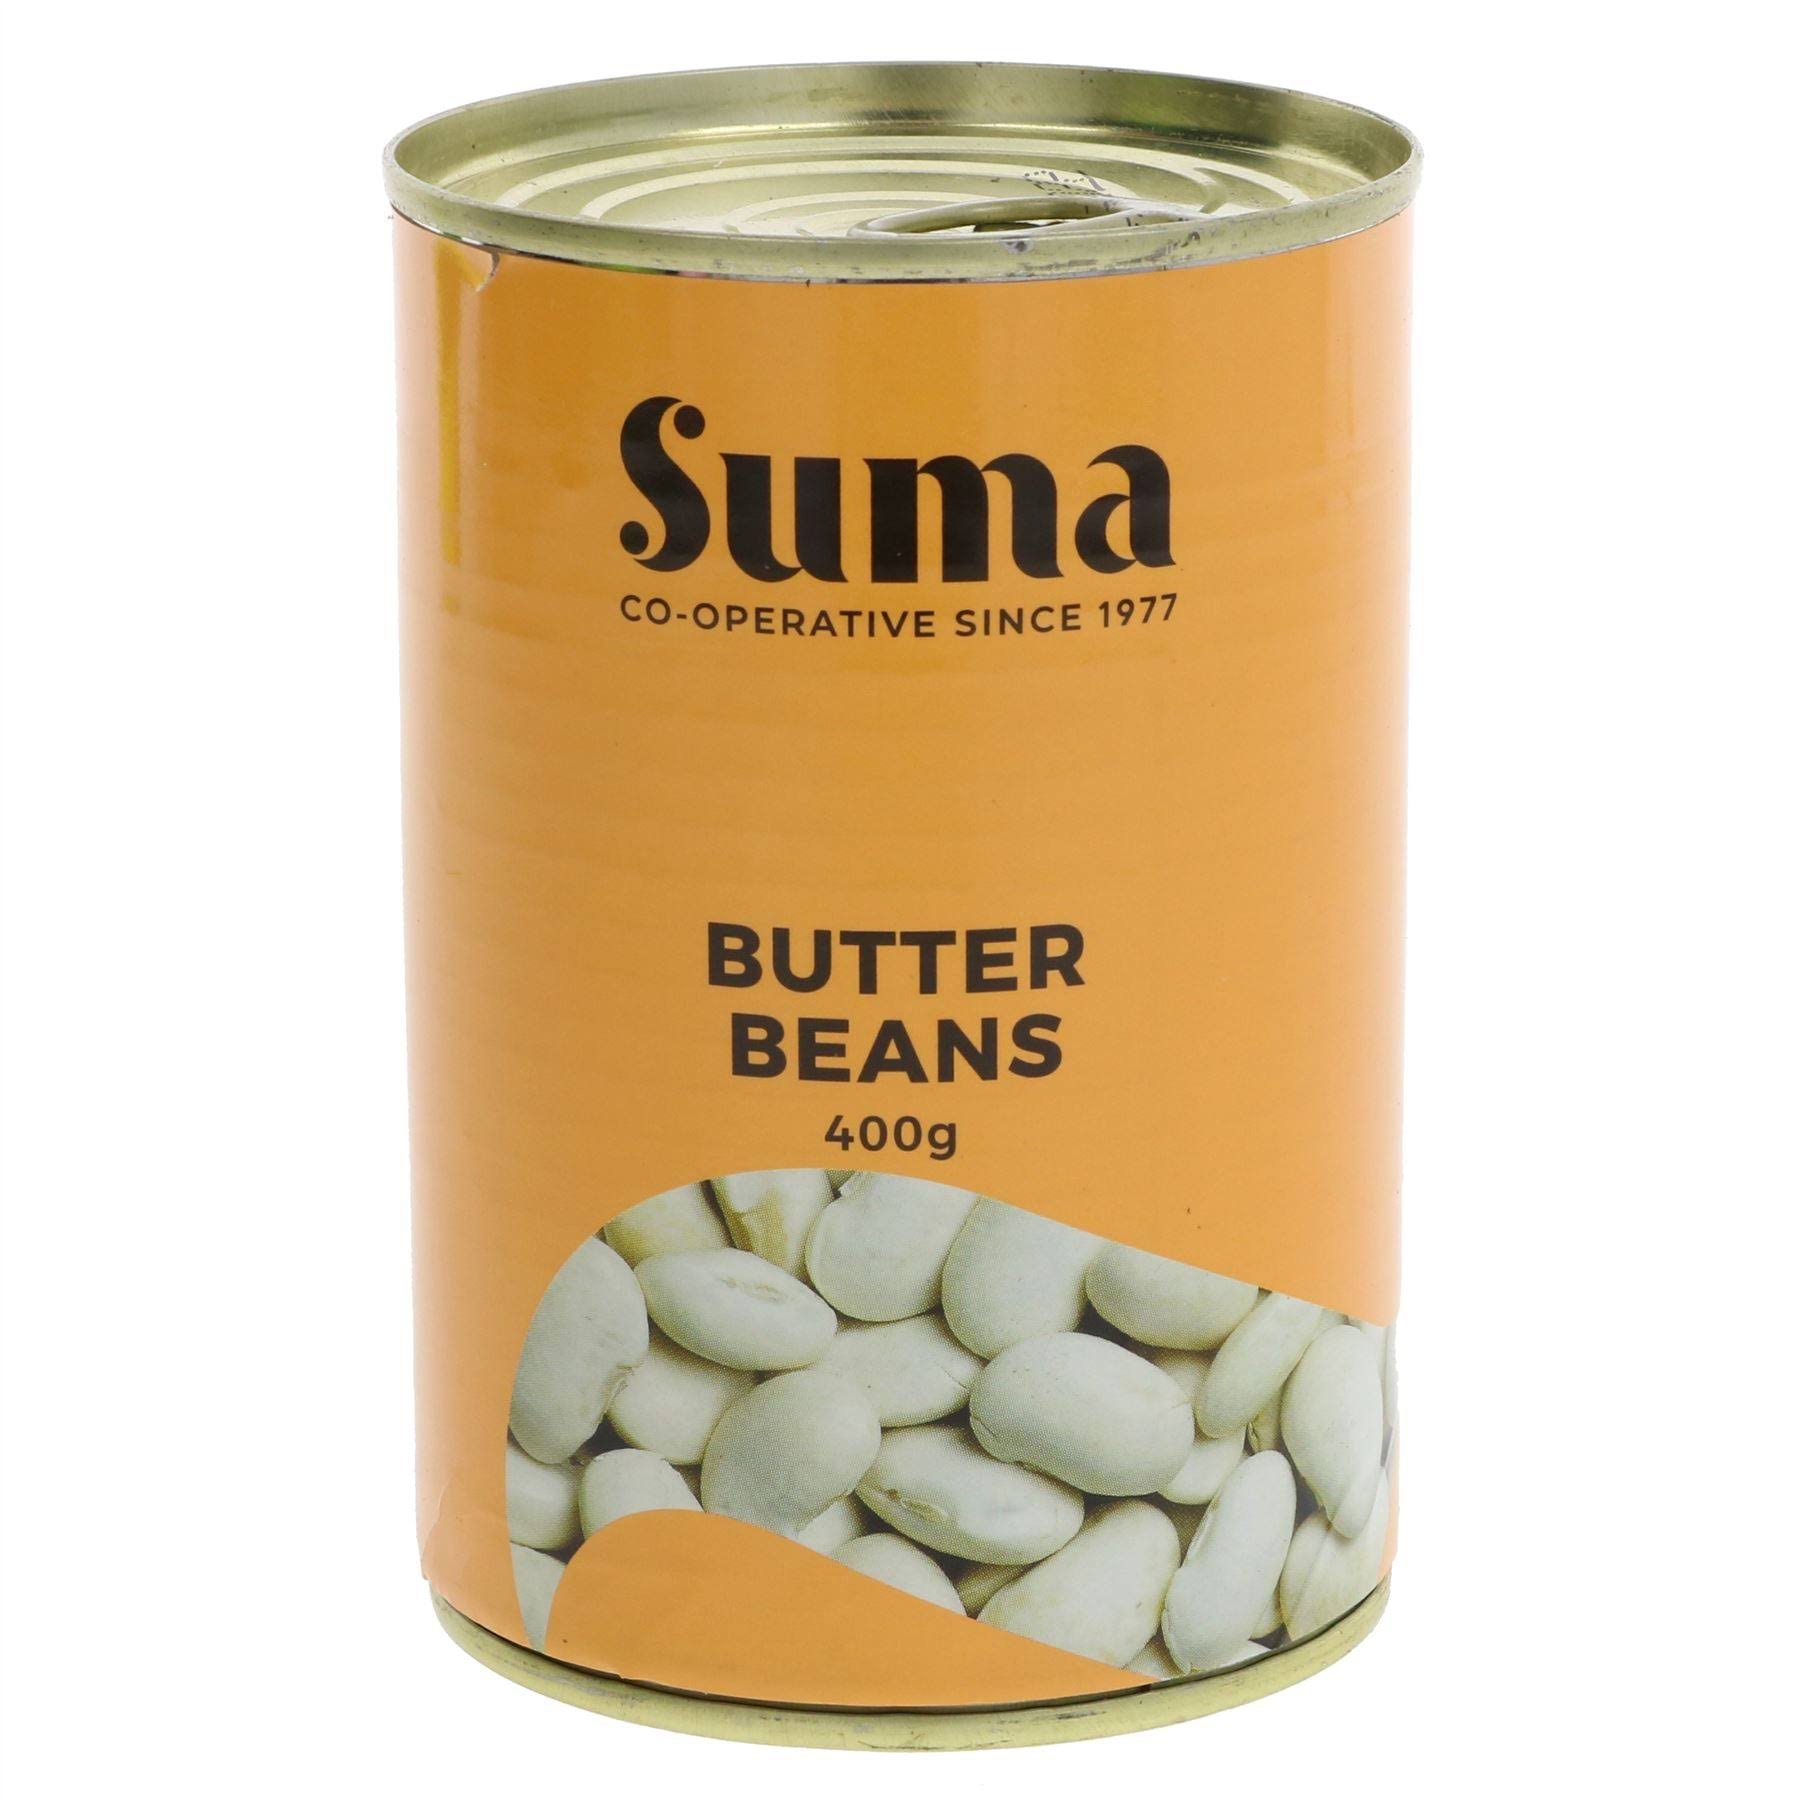 Suma Butter Beans - 400g